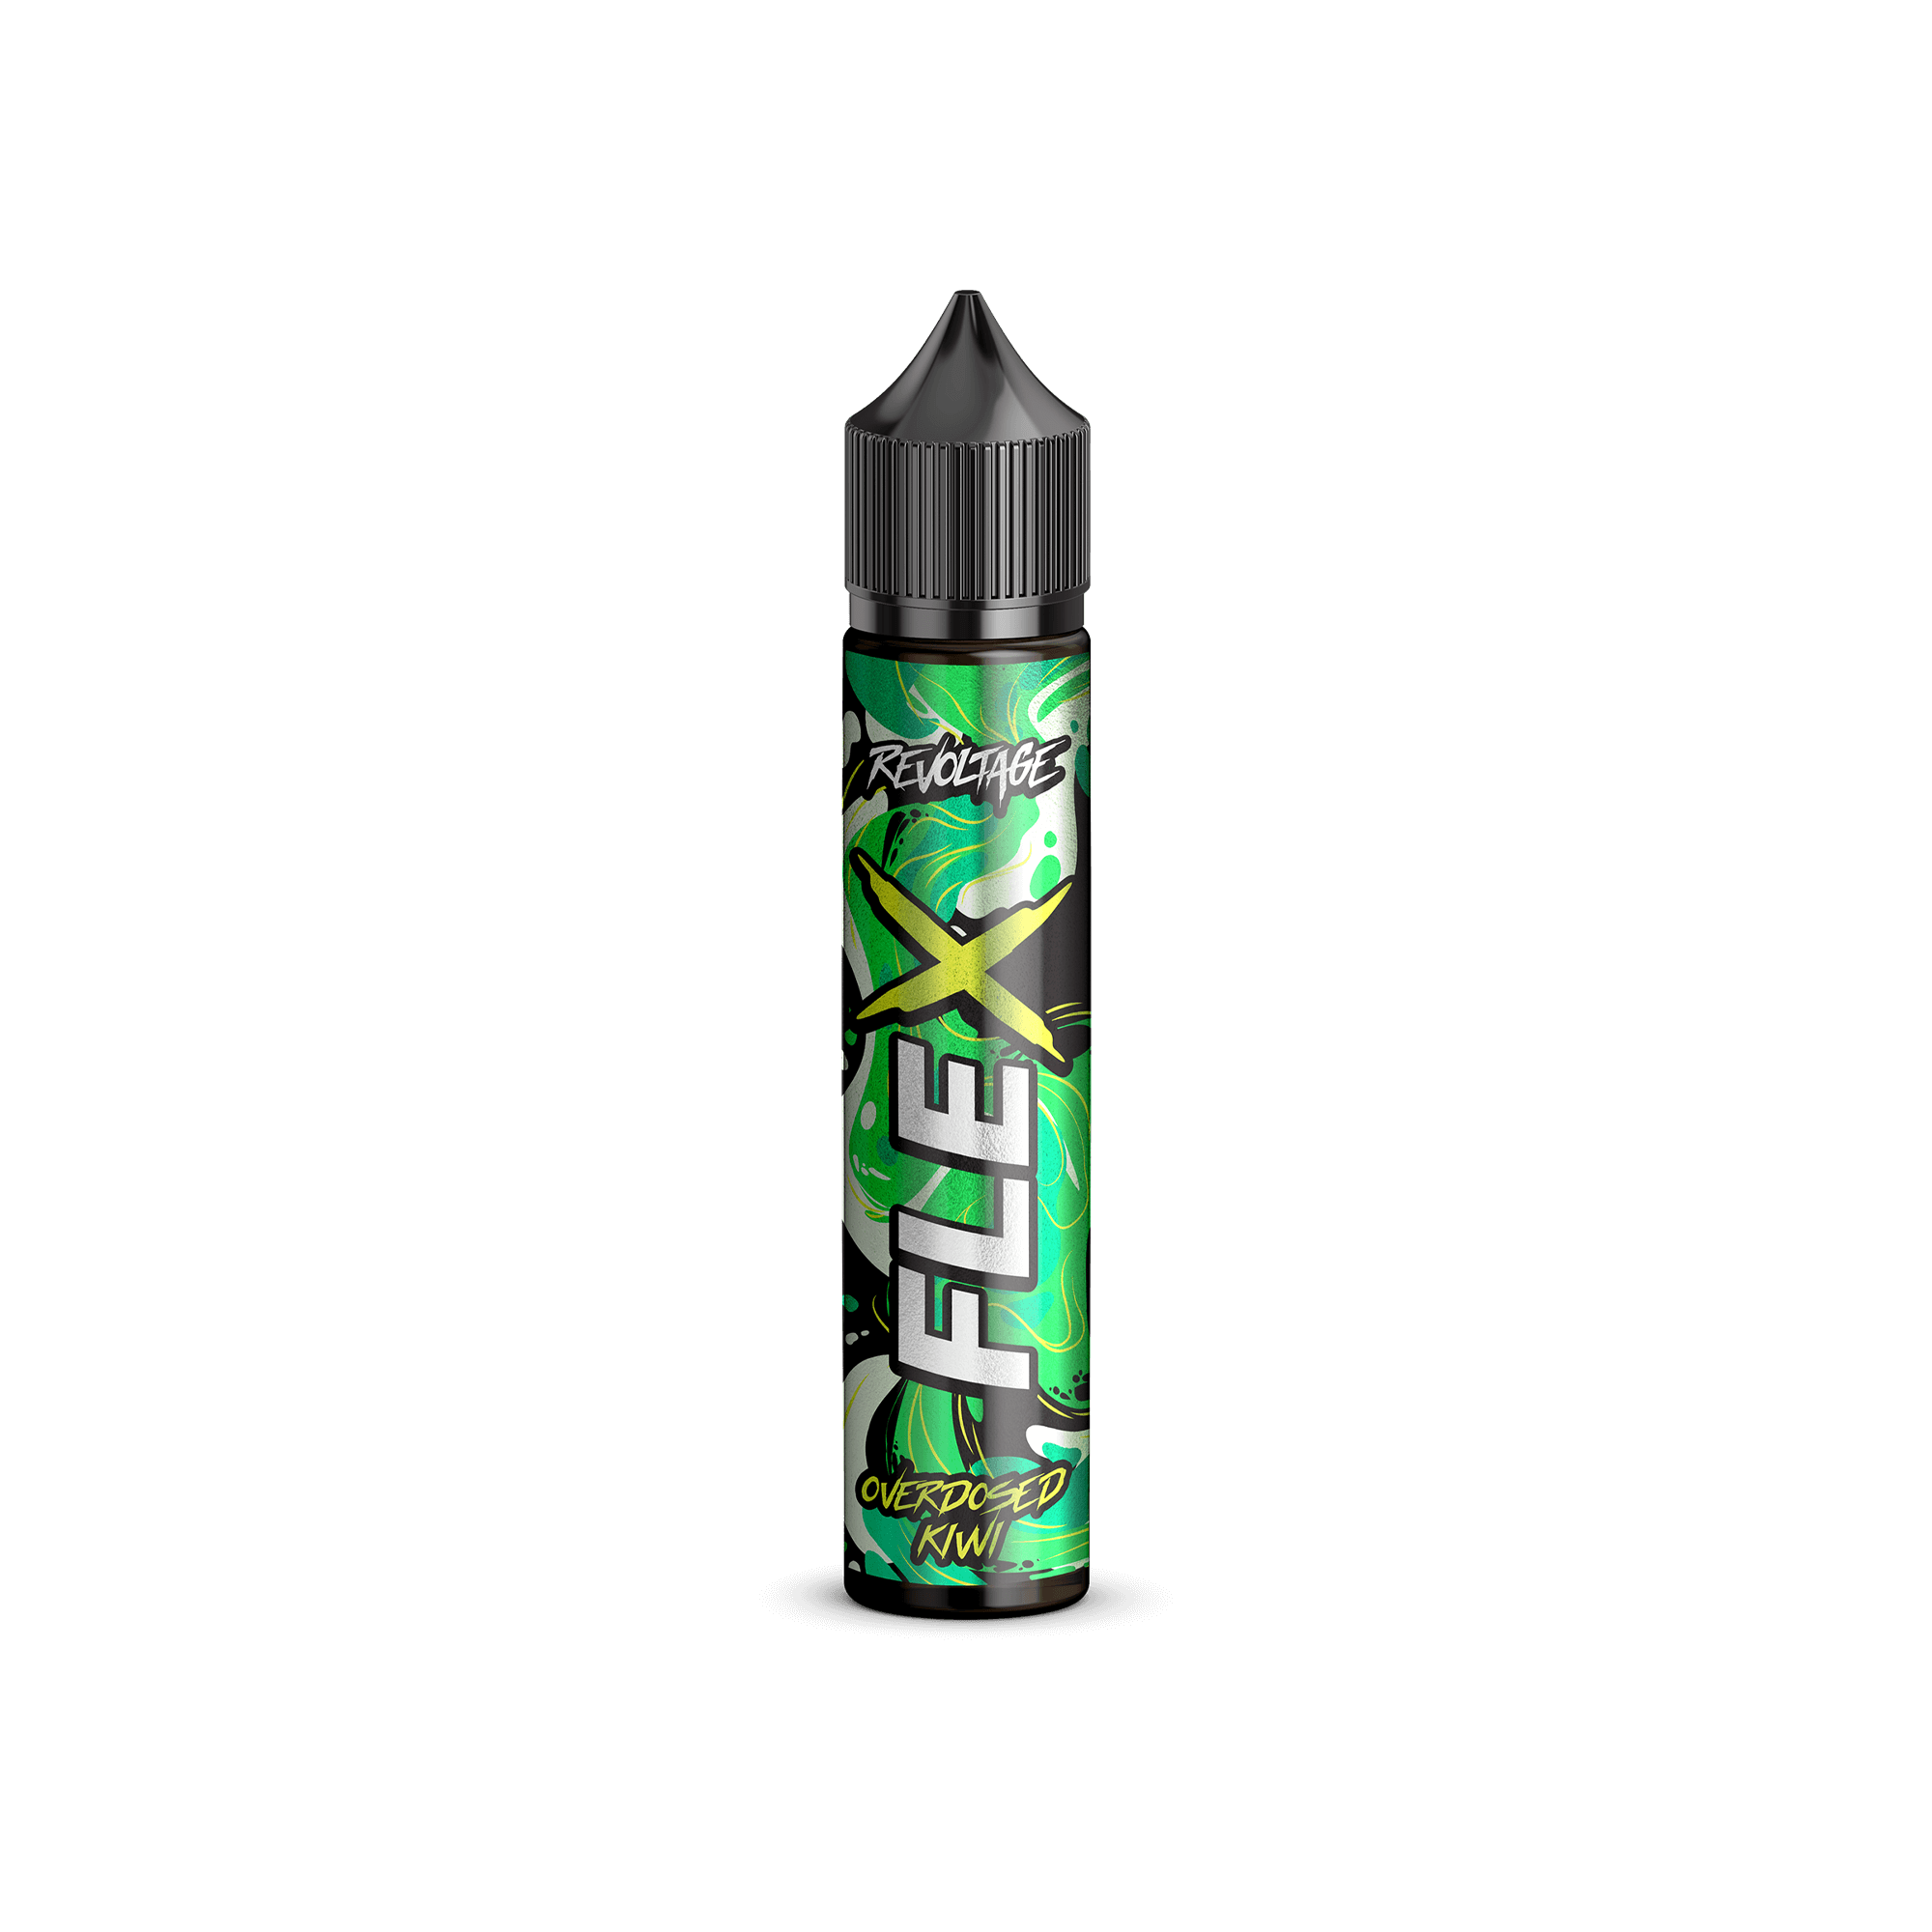 Revoltage Flex Overdosed Kiwi 10 ml Aroma